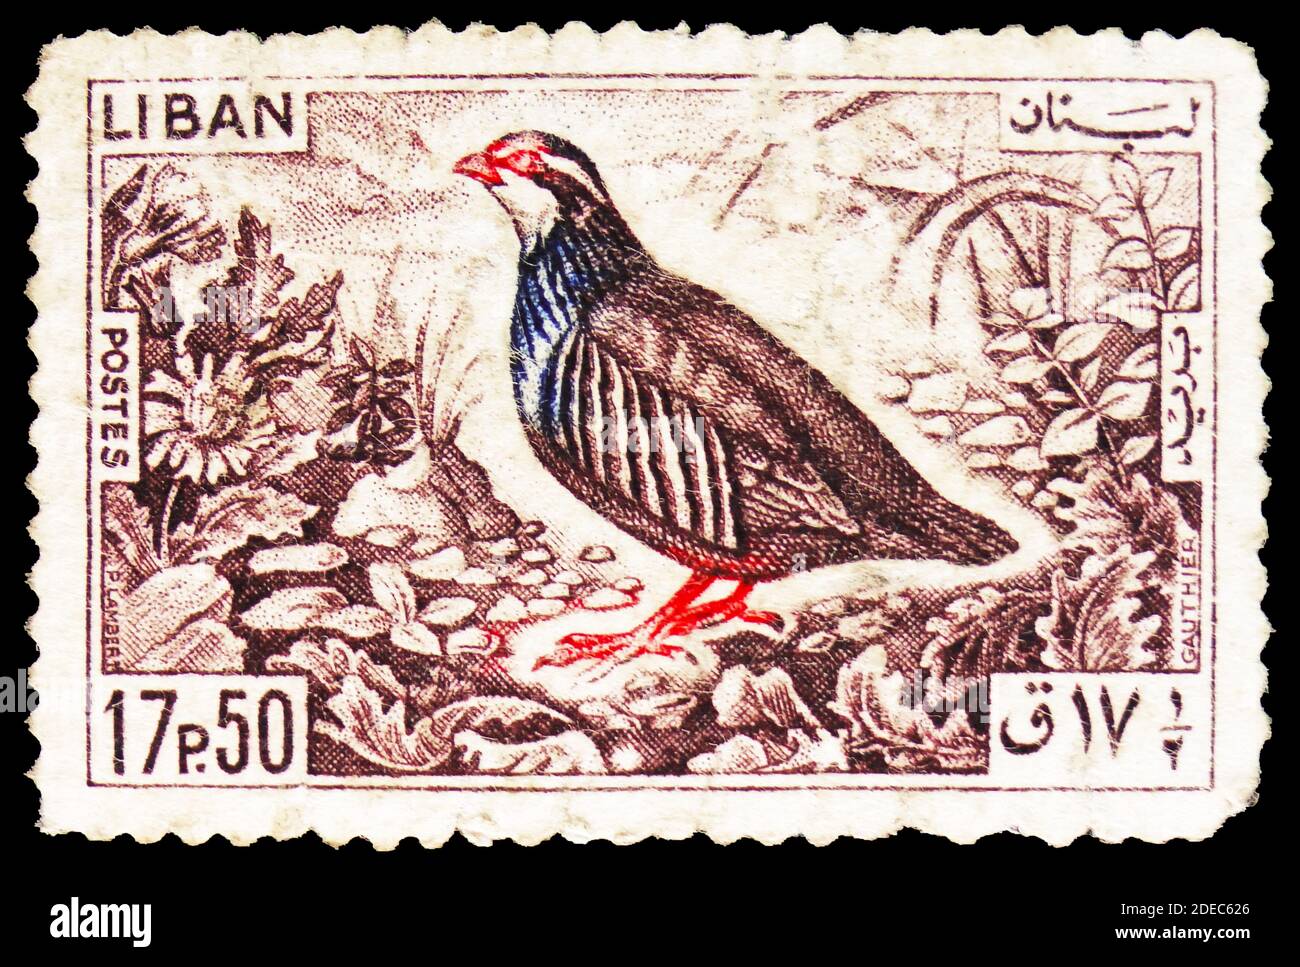 MOSKAU, RUSSLAND - 25. OKTOBER 2020: Briefmarke gedruckt im Libanon zeigt Rock Partridge (Alectoris graeca), Birds Serie, um 1965 Stockfoto